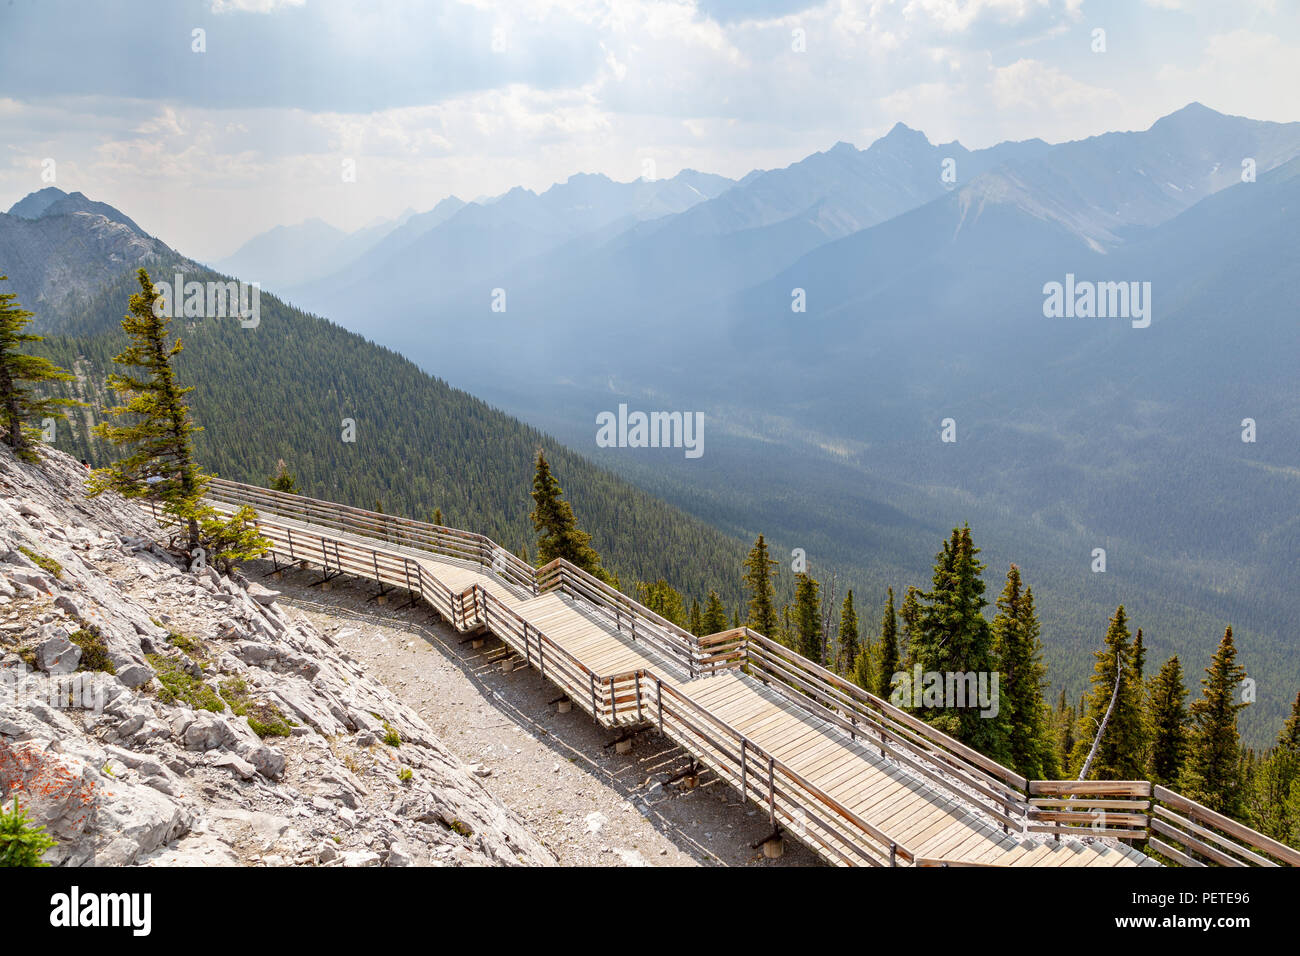 Une passerelle en bois au sommet du mont Sulphur avec vue panoramique sur la chaîne de montagnes d'ossature dans les Rocheuses canadiennes de parc national Banff. Banque D'Images